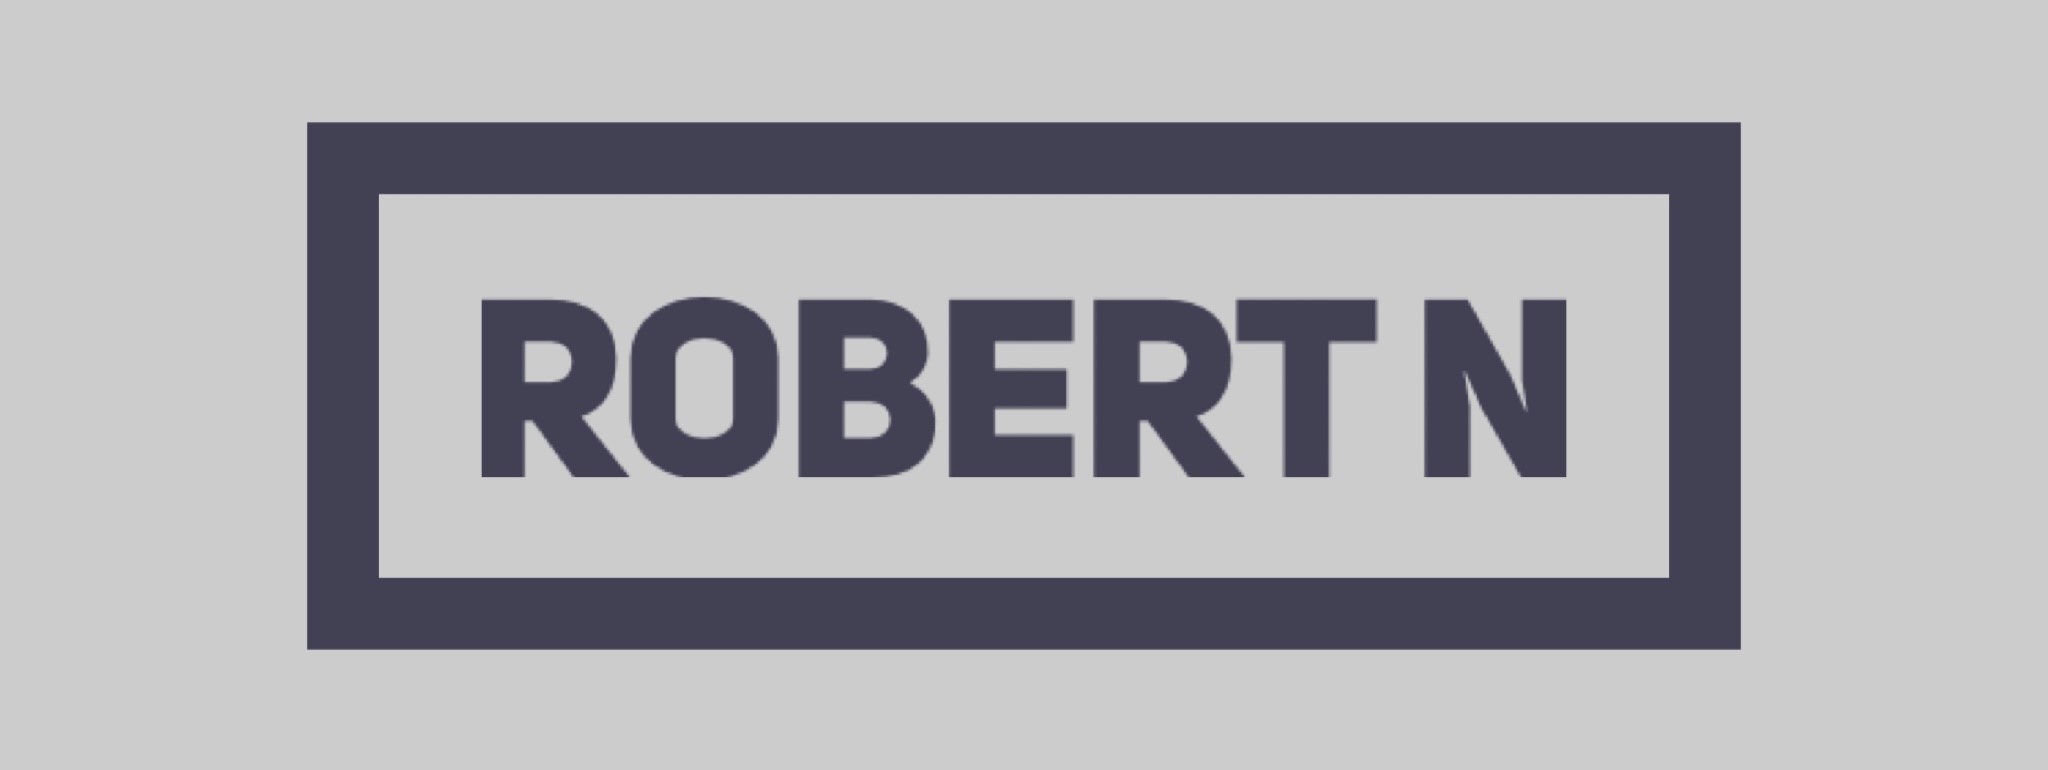 Robert N